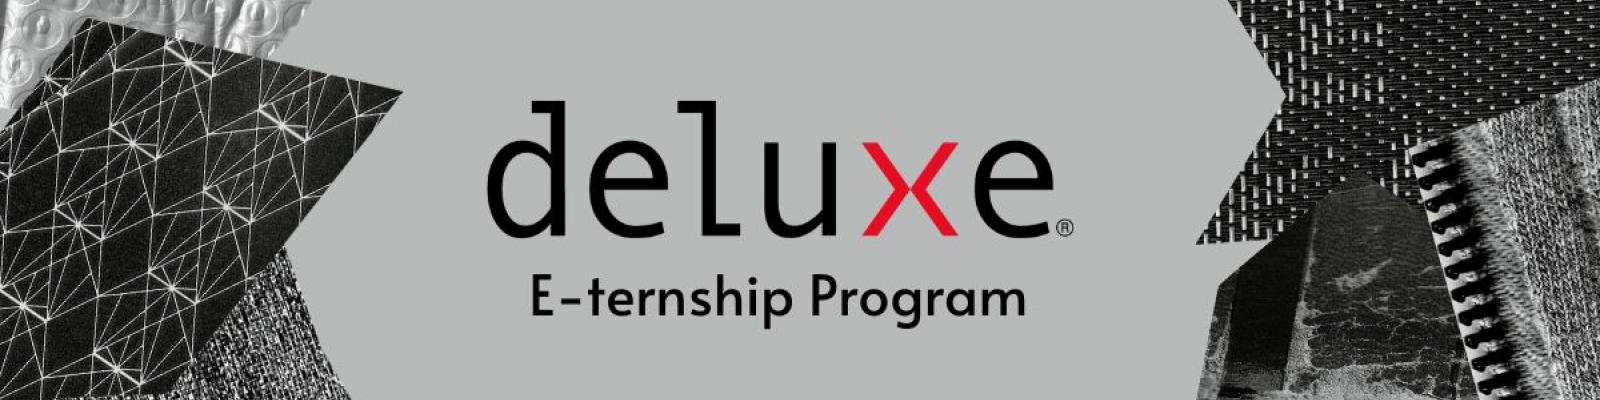 deluxe entrepreneurship banner